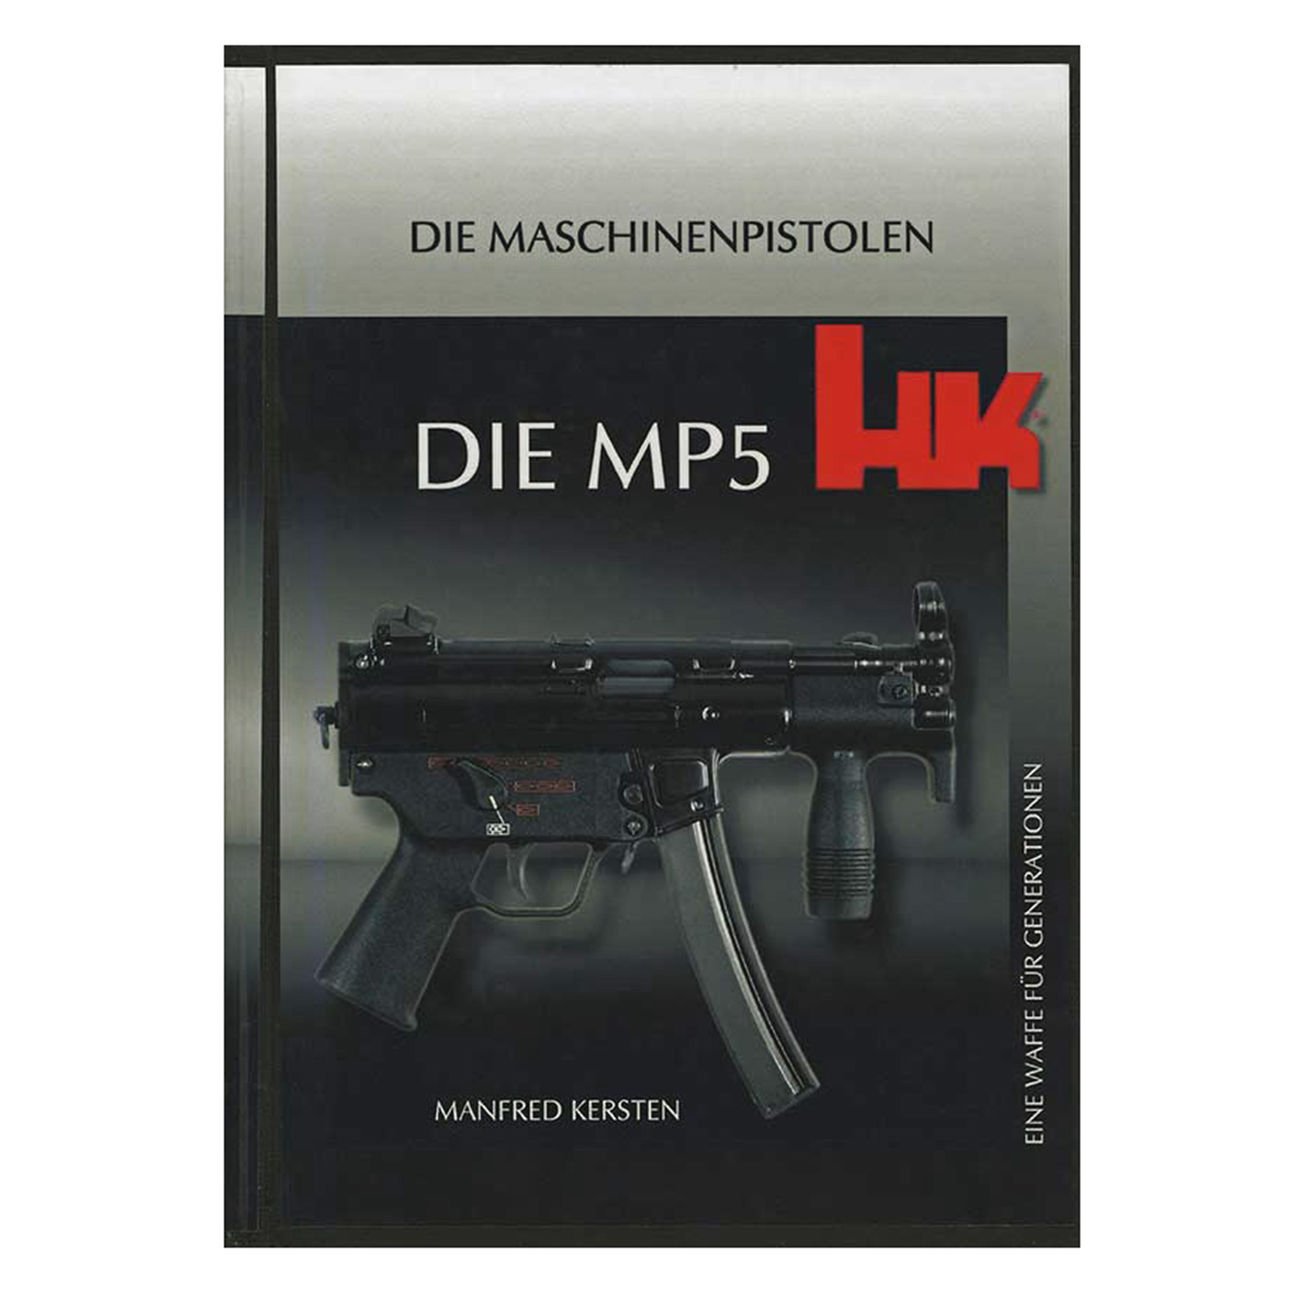 Die MP5 HK - Die Maschinenpistolen